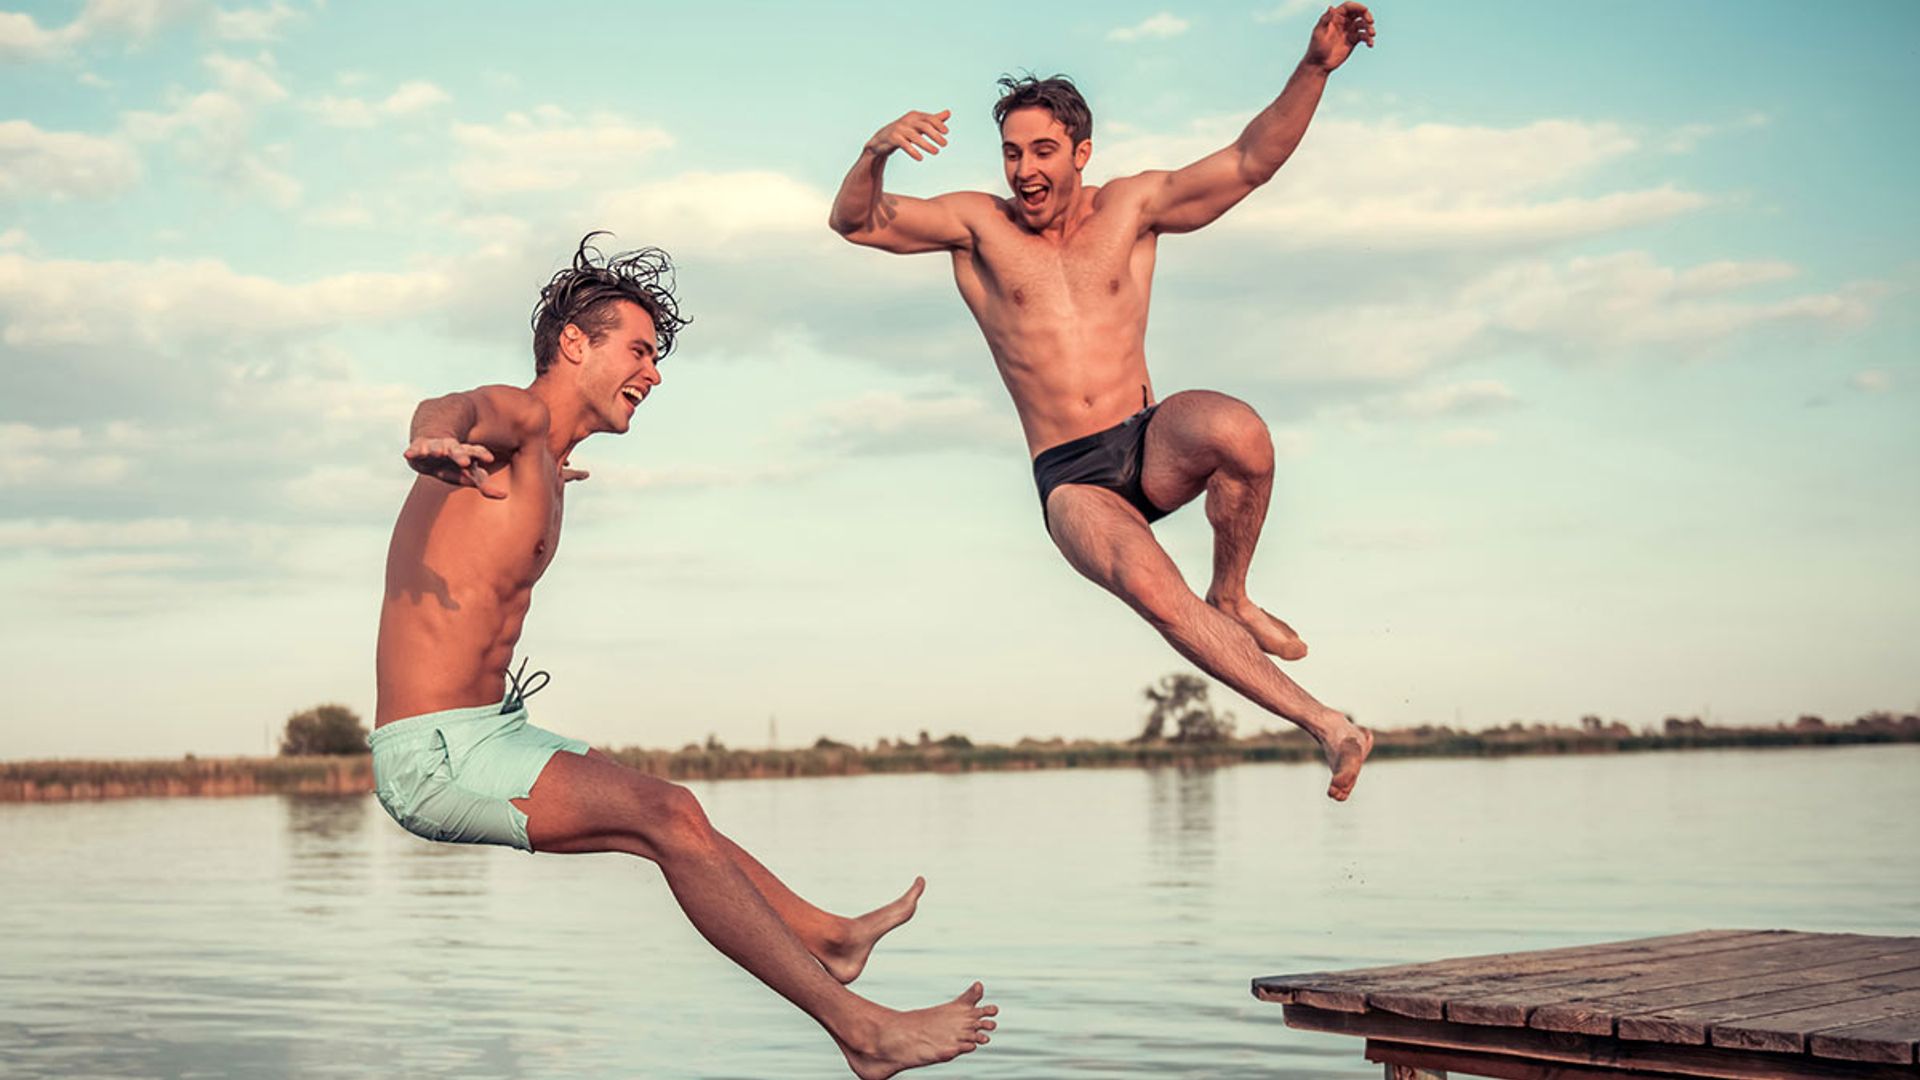 15 Best men's swimwear brands 2022: Swim trunks from M&S,Reiss Ralph Lauren & more